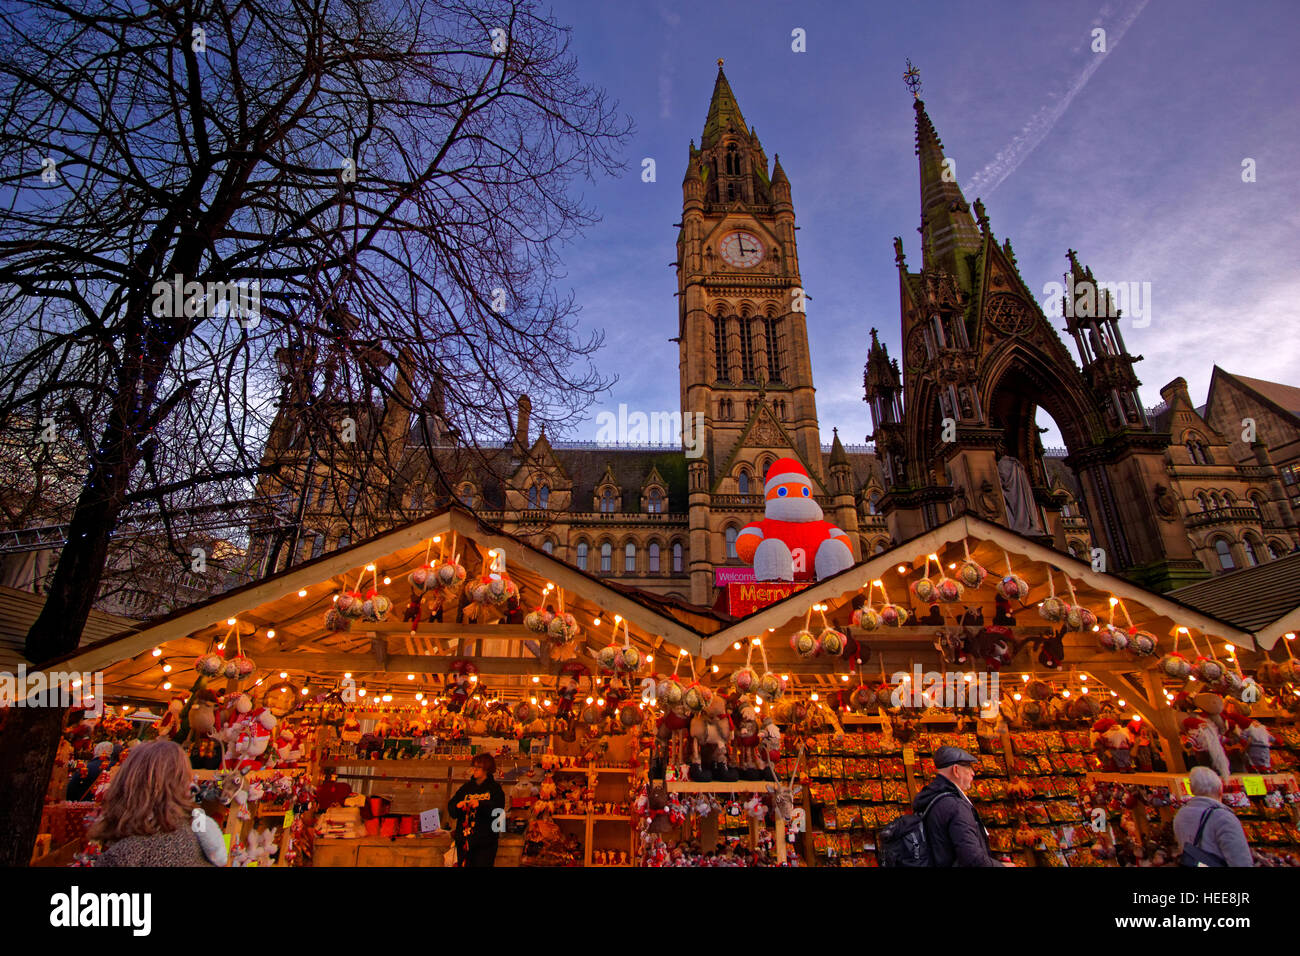 Manchester-Weihnachtsmarkt und Rathaus am Albert Square, Manchester Stadtzentrum, Greater Manchester. England. Stockfoto